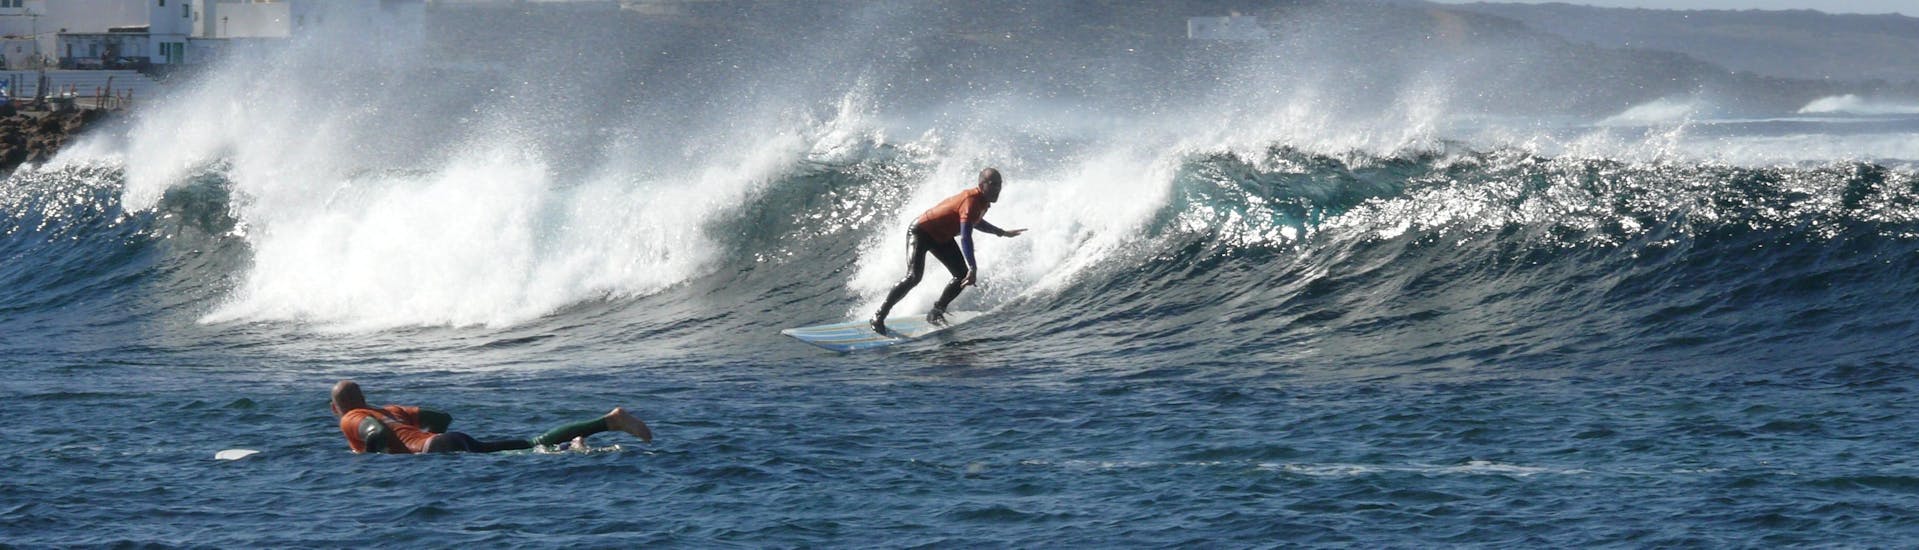 Cours privé de surf (dès 10 ans) pour Tous niveaux.